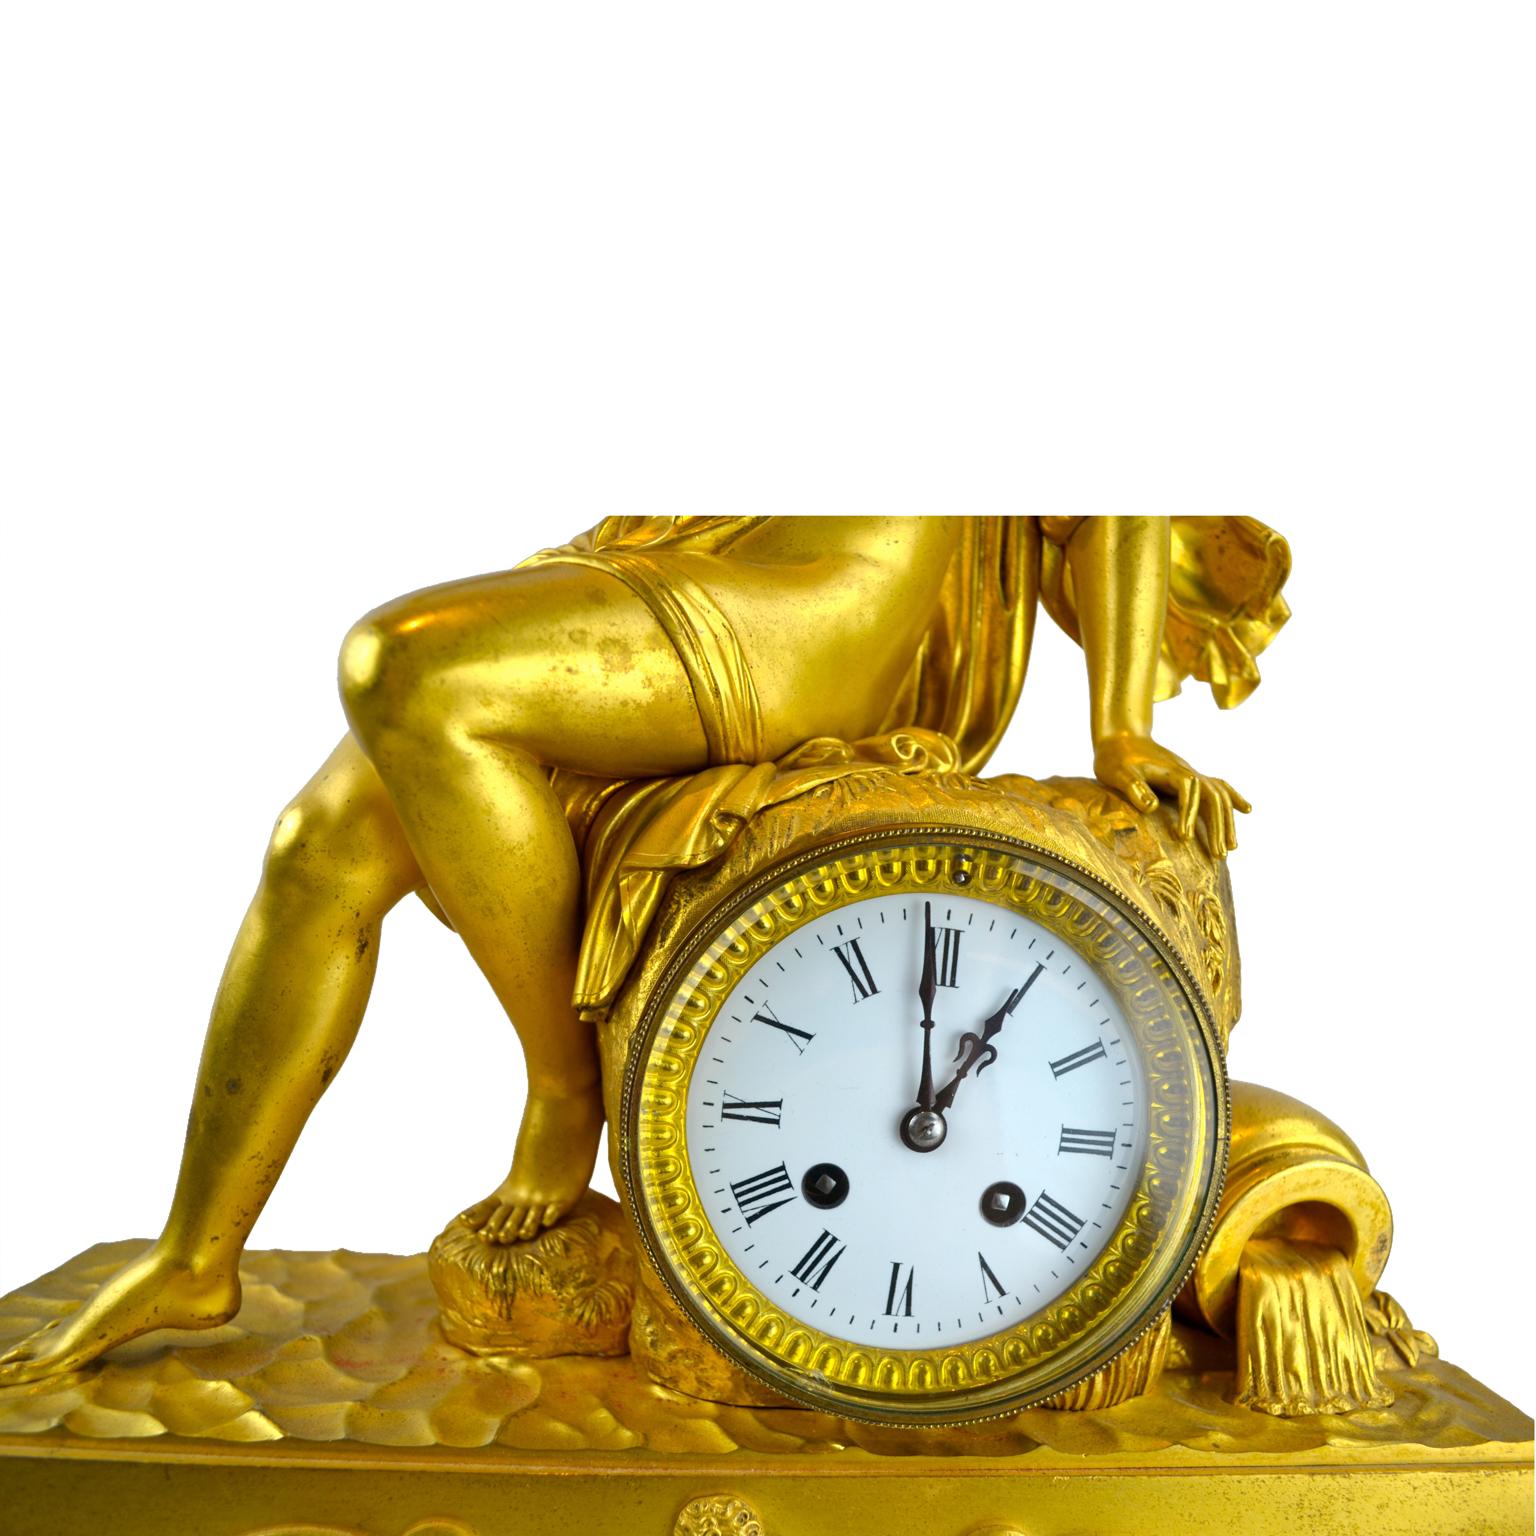 Une horloge Empire française en bronze doré représentant une allégorie de la source d'eau de la terre. Sur cette horloge, une nymphe au drapé classique est assise au sommet d'un affleurement rocheux, son pied droit reposant sur l'eau. À droite du